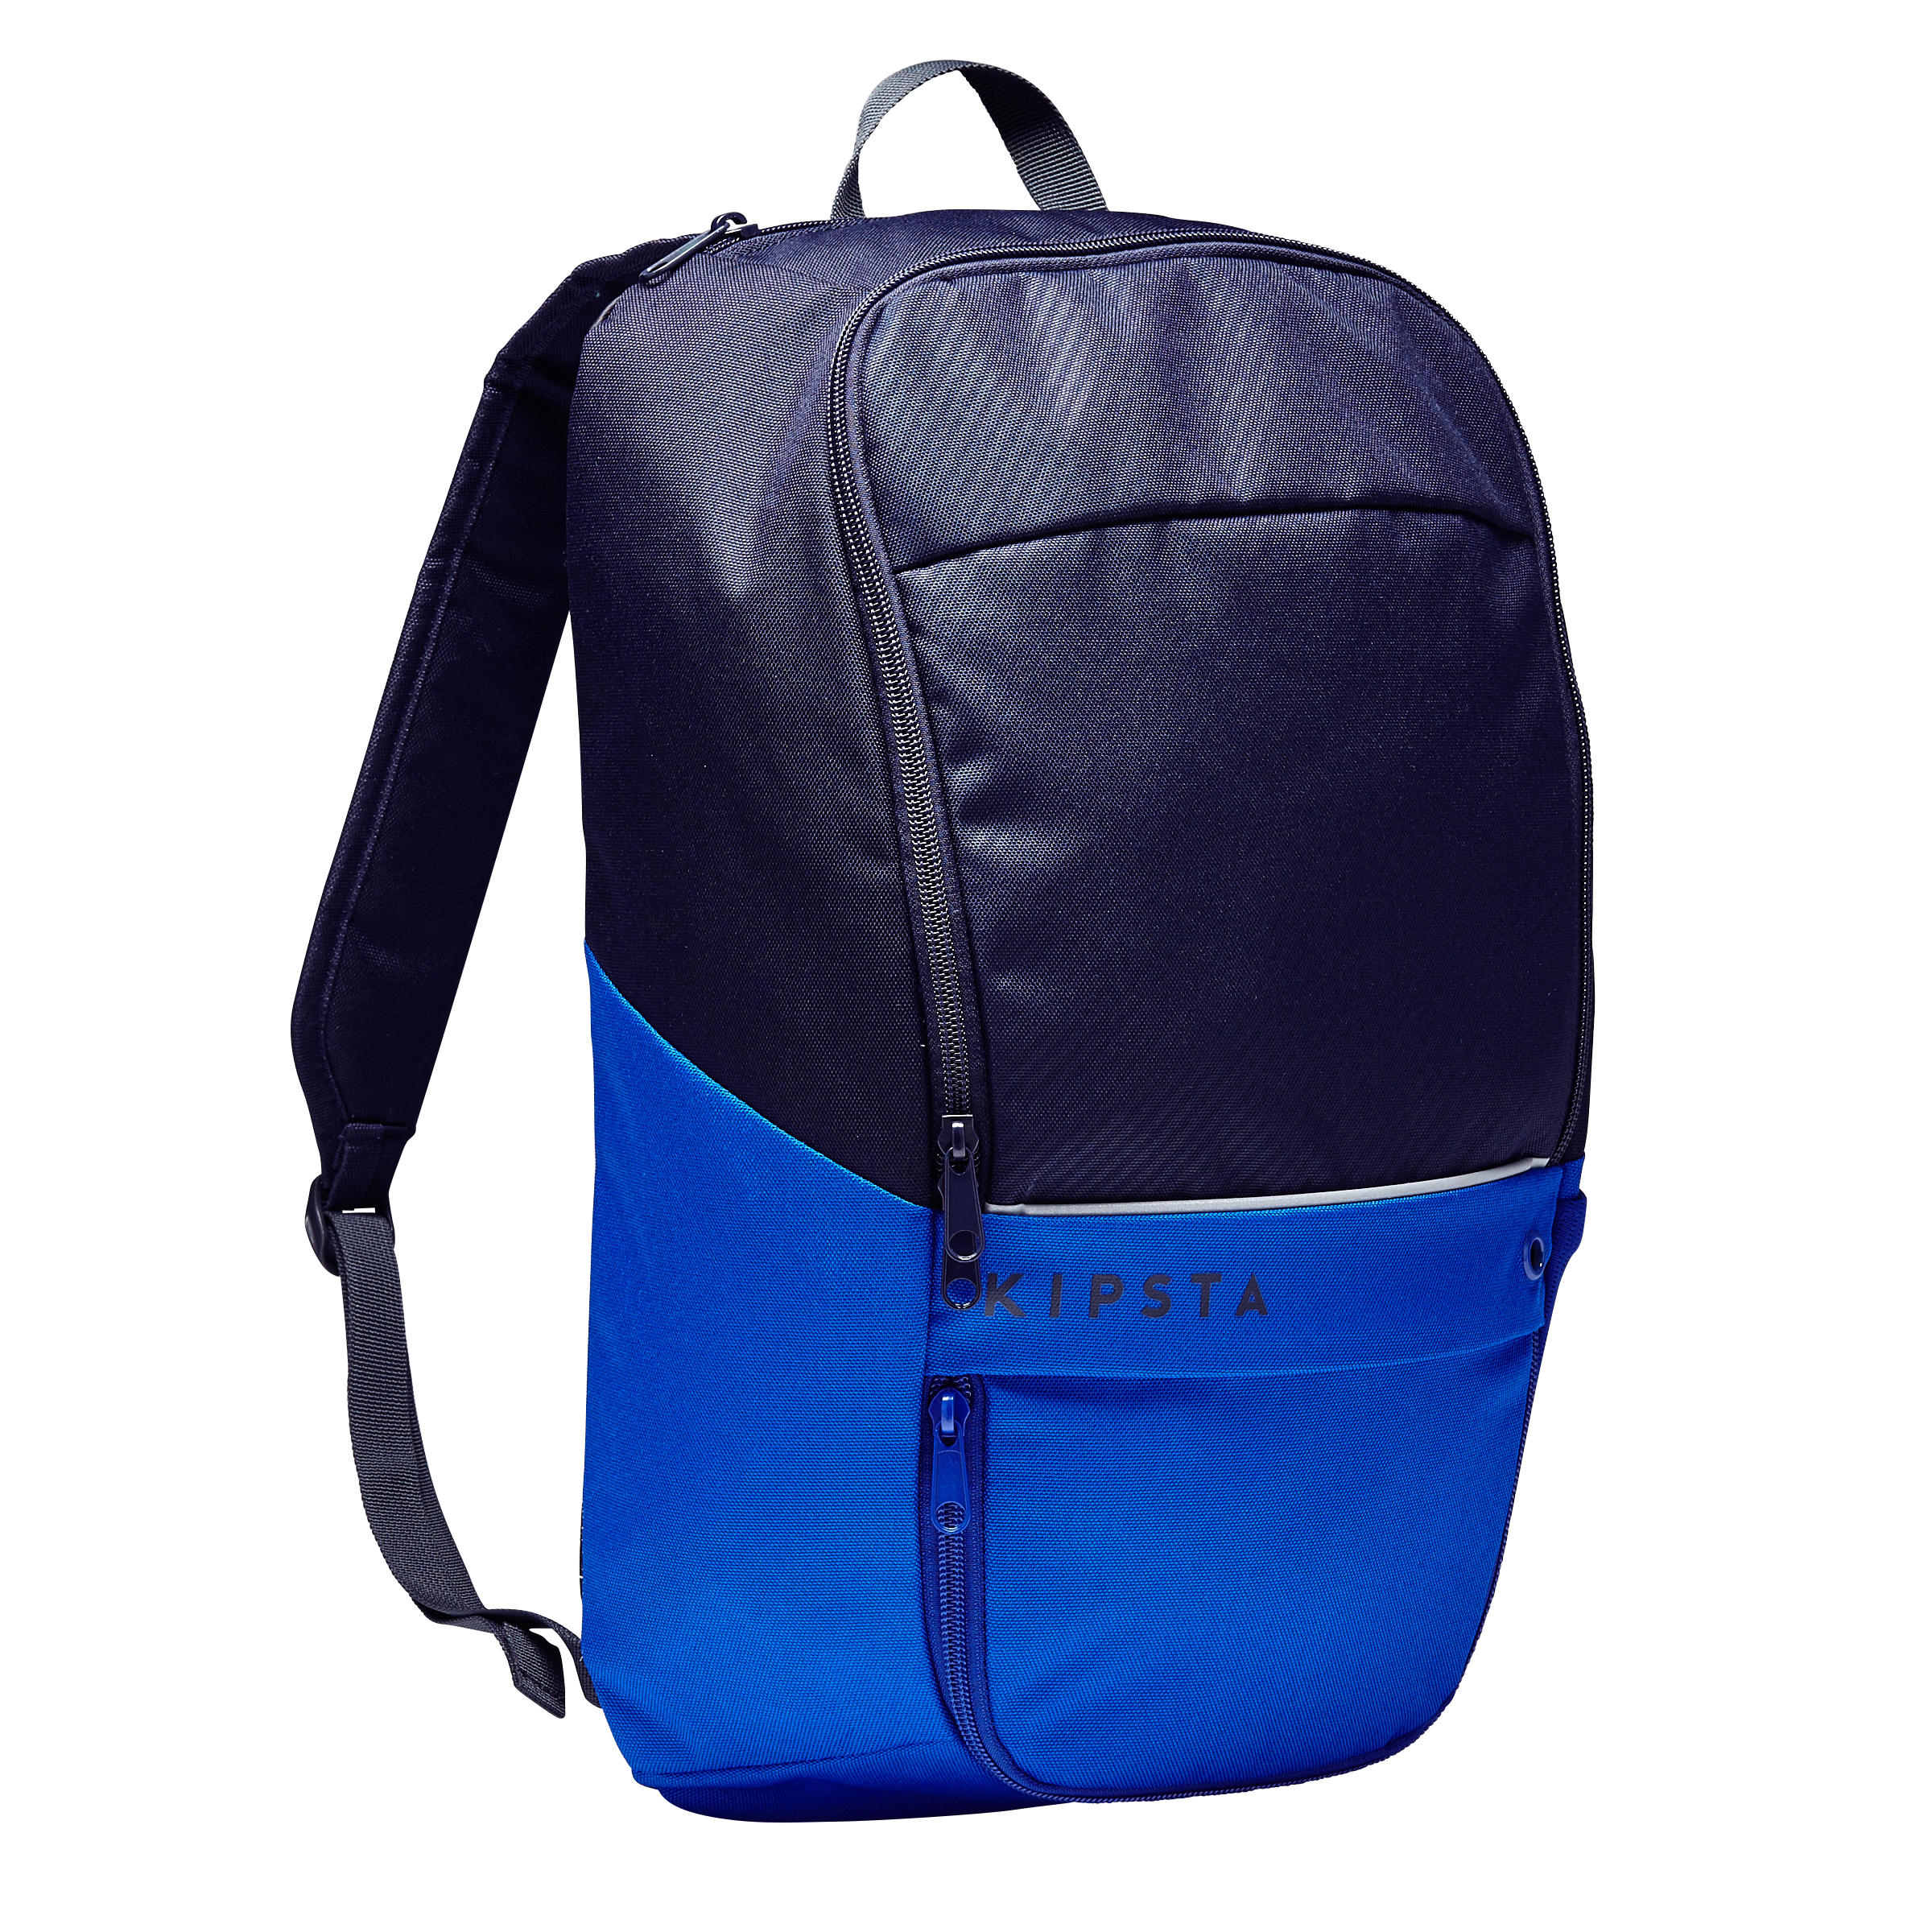 KIPSTA 17L Backpack Essential - Blue